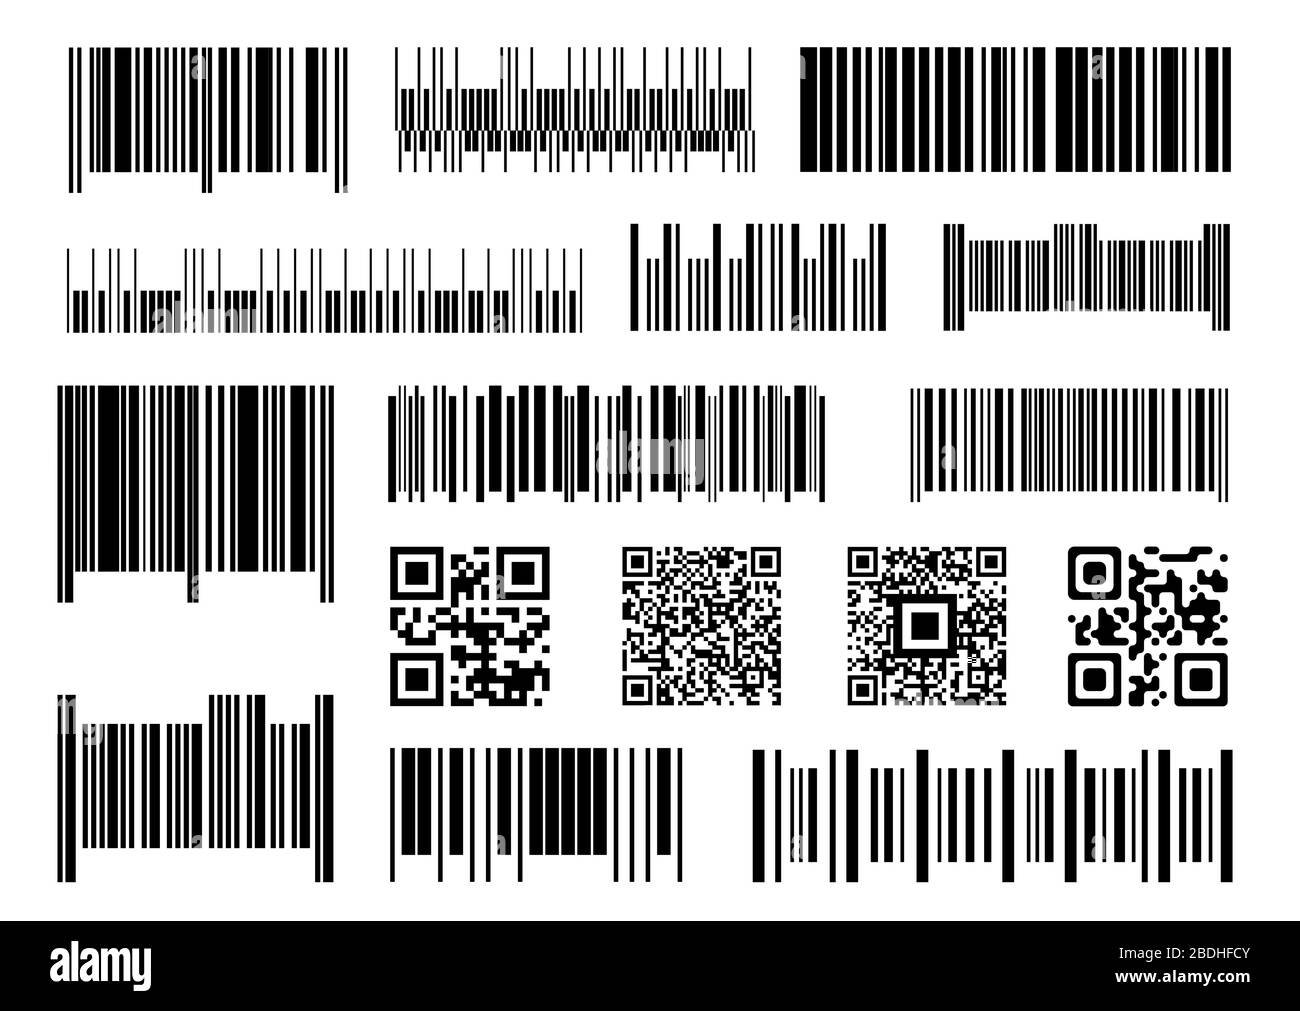 Código de barras digital. Códigos de barras de supermercado, barras de códigos de escaneo y juego vectores etiquetas de precios industriales. Inventario de productos, verificación digital. Embalaje único Imagen